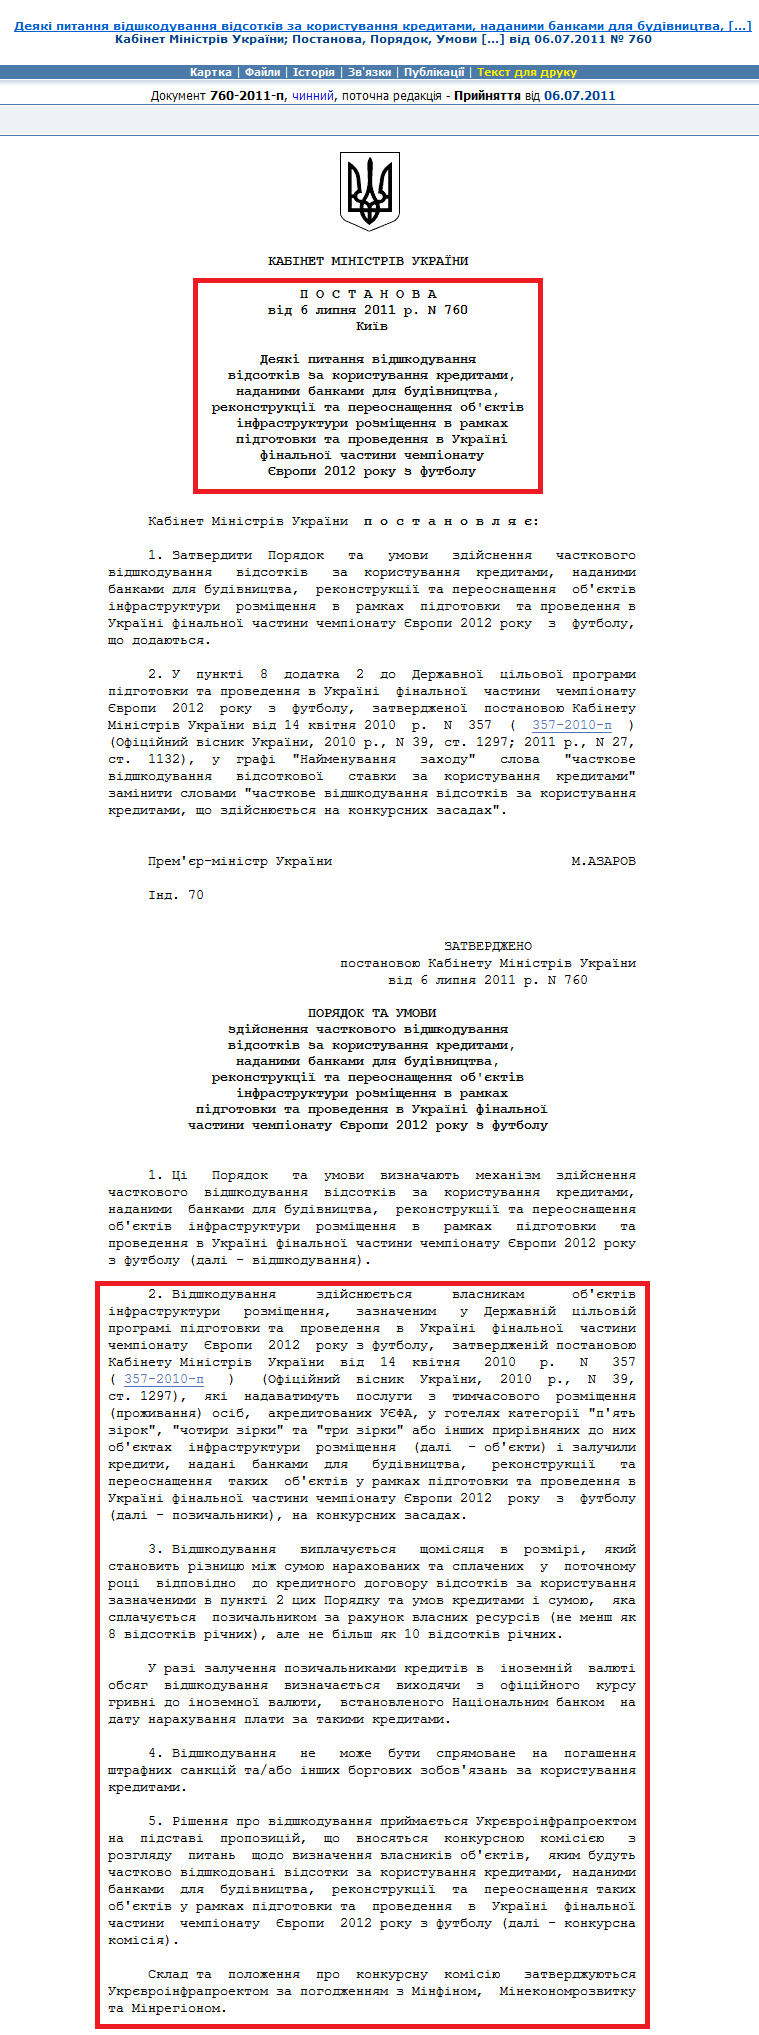 http://zakon2.rada.gov.ua/laws/show/760-2011-%D0%BF